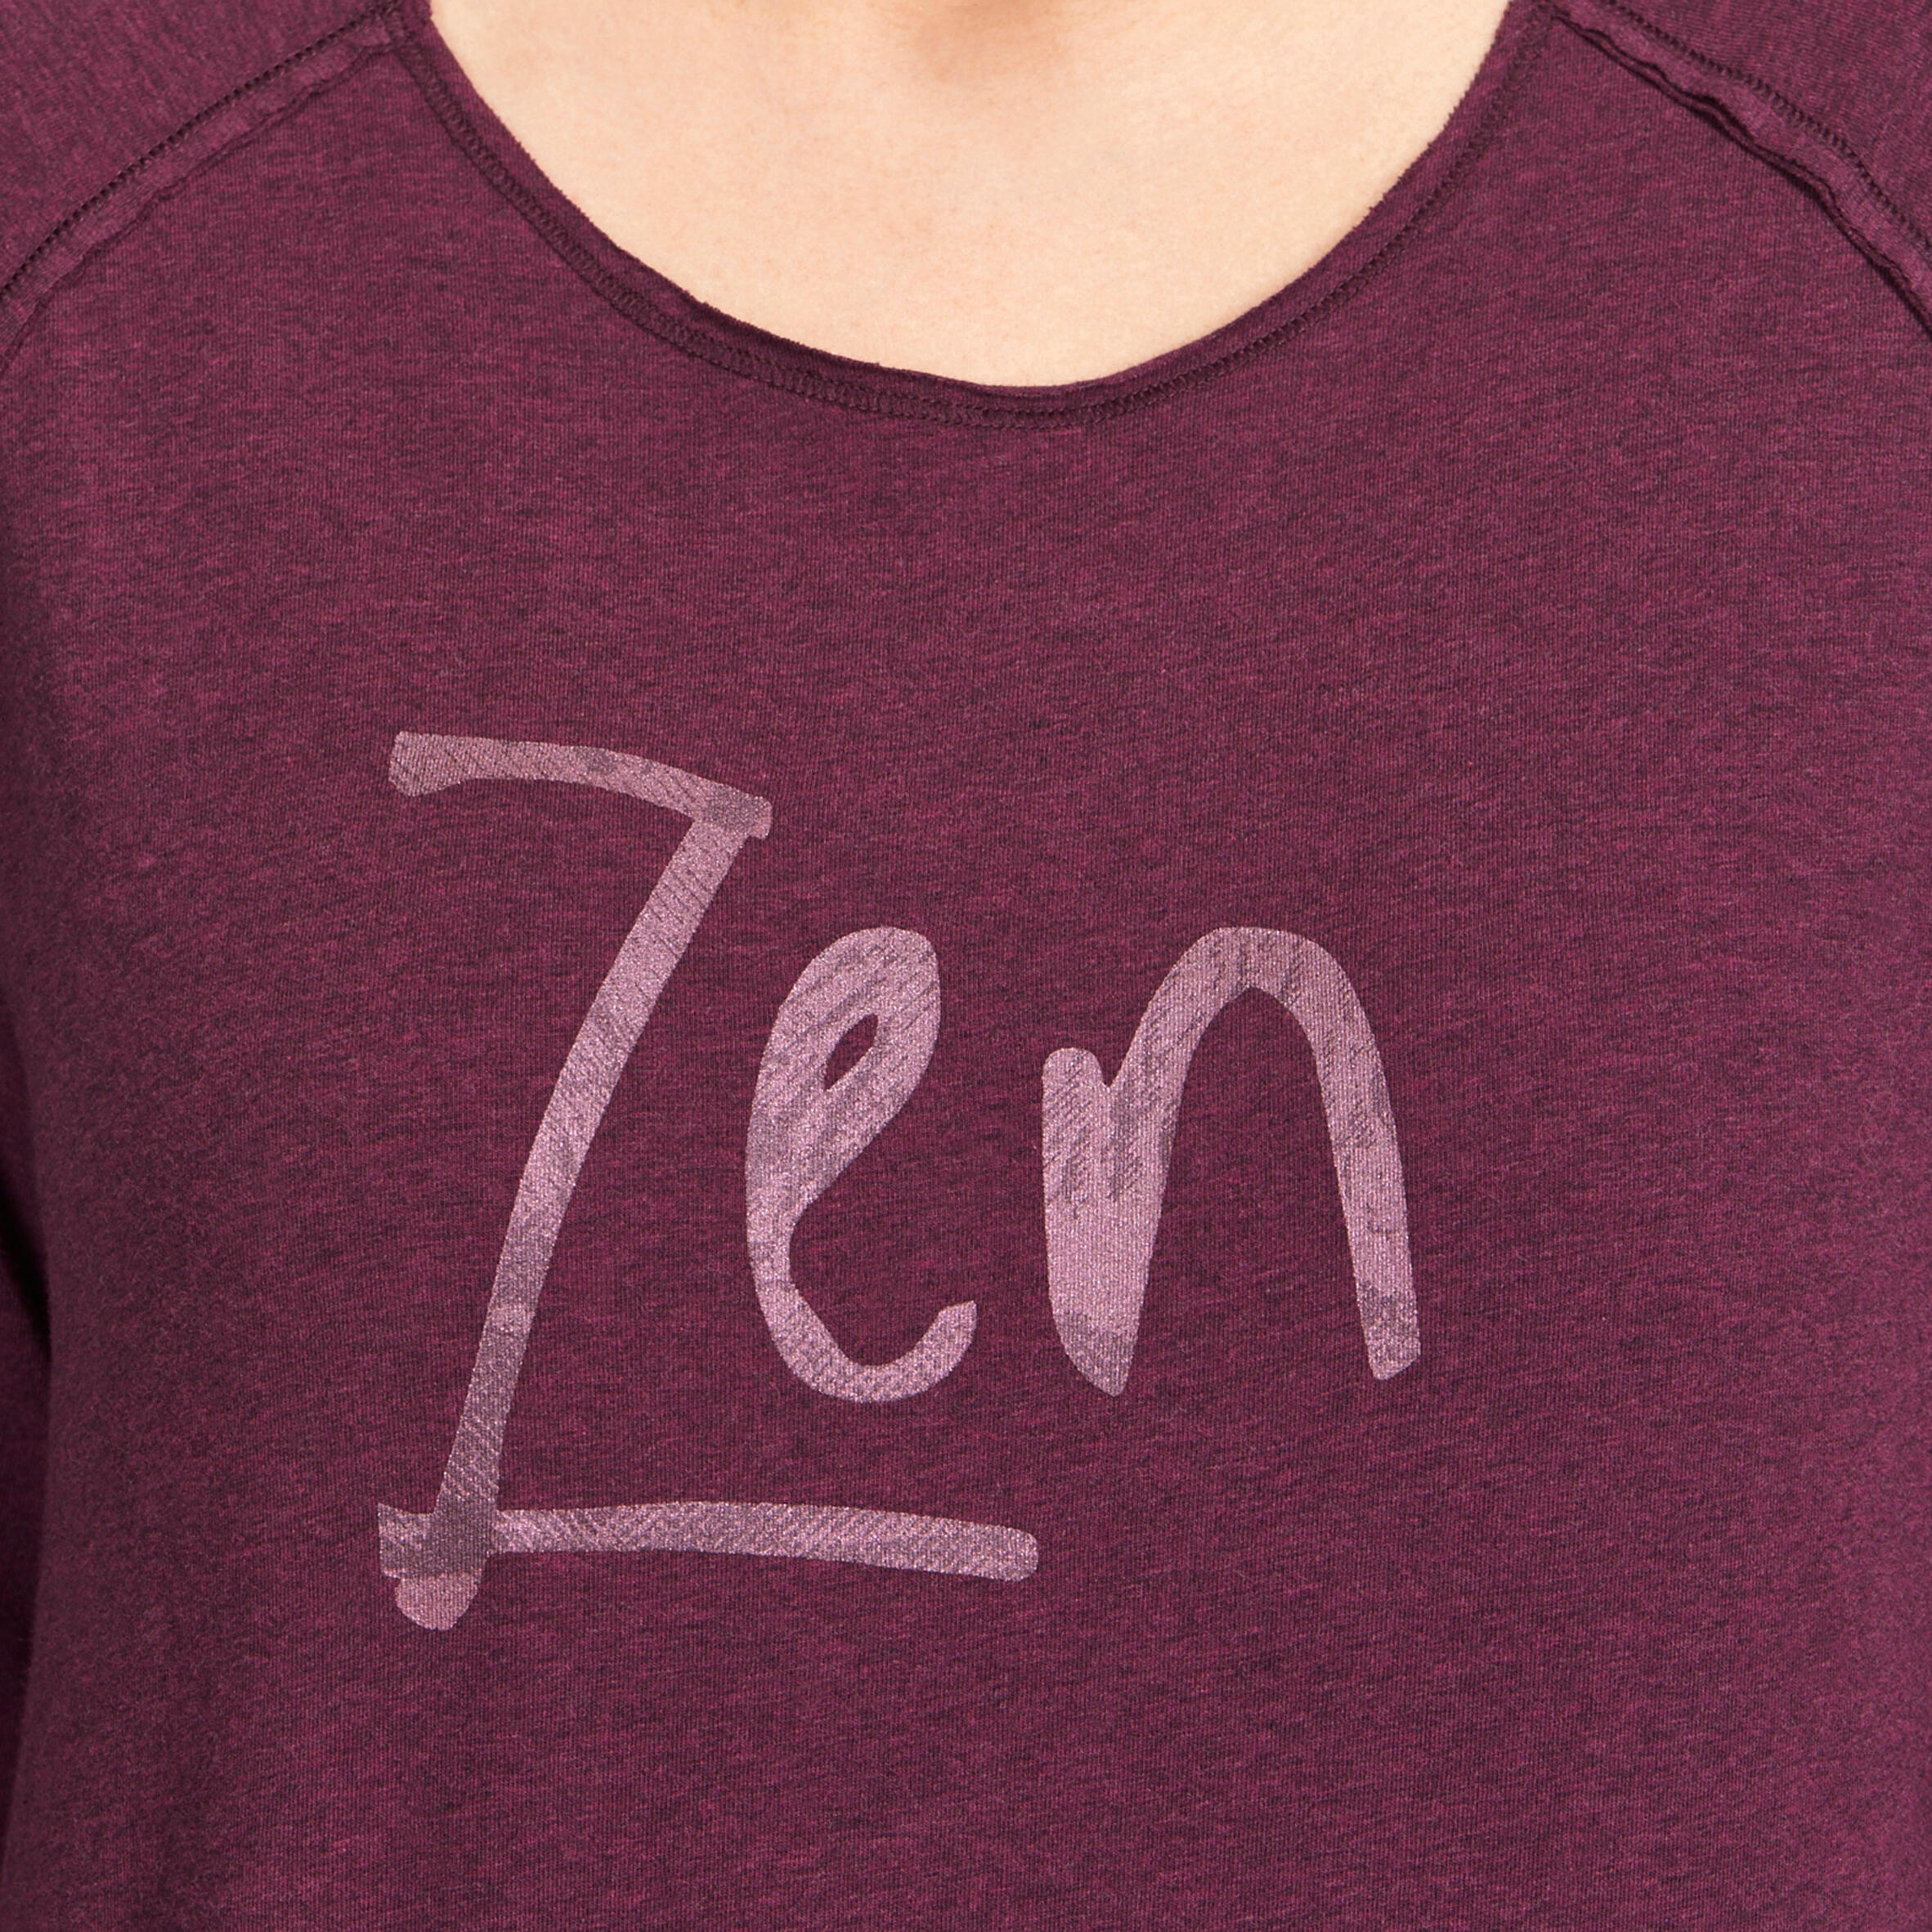 Women's Organic Cotton Long-Sleeved Yoga T-Shirt - Mottled Burgundy 6/12